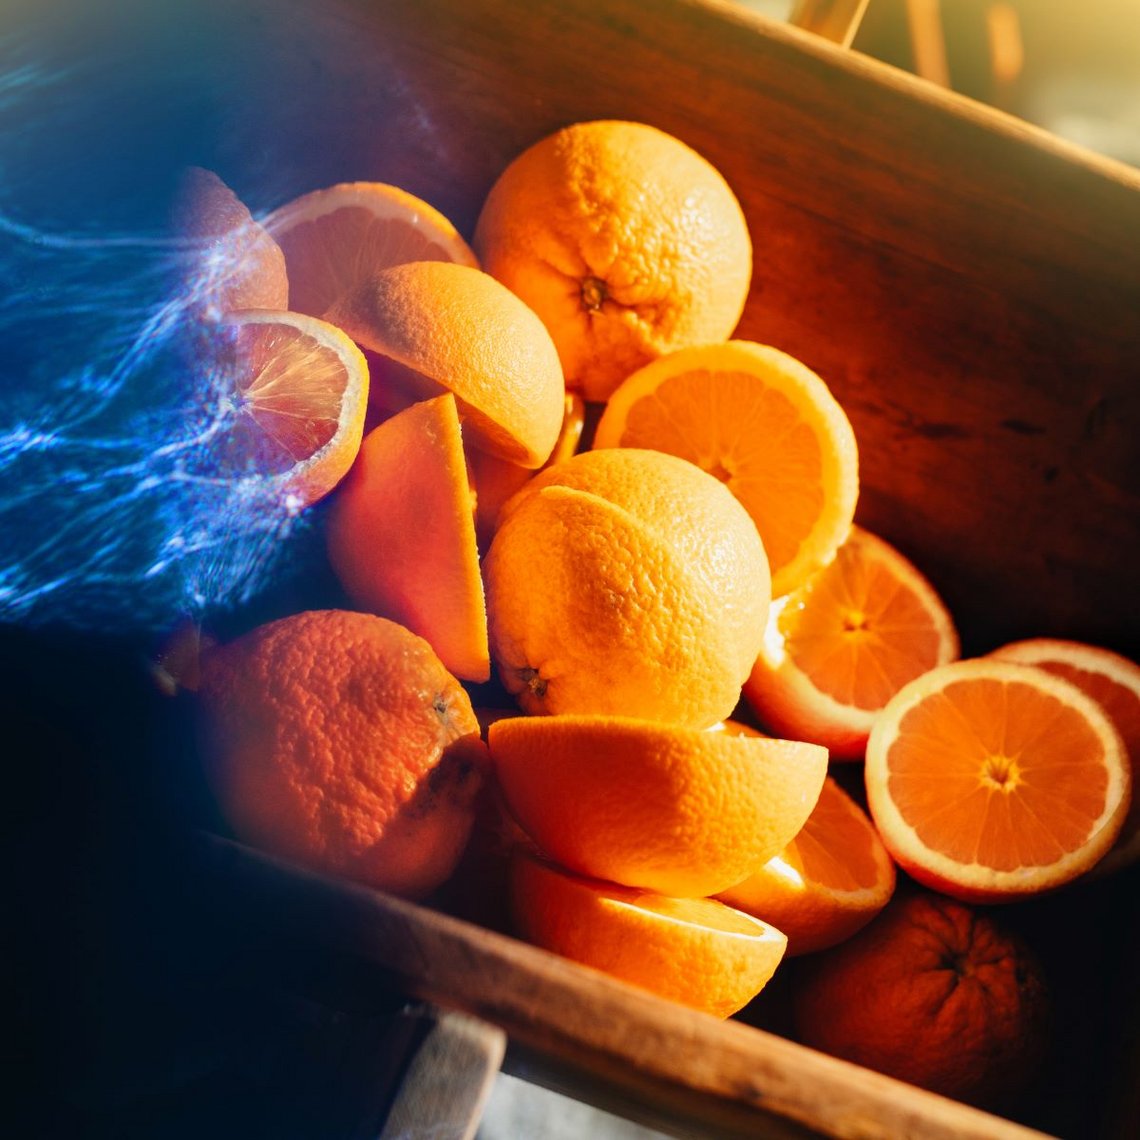 Detailaufnahme von mehreren Orangen und Orangenhälften